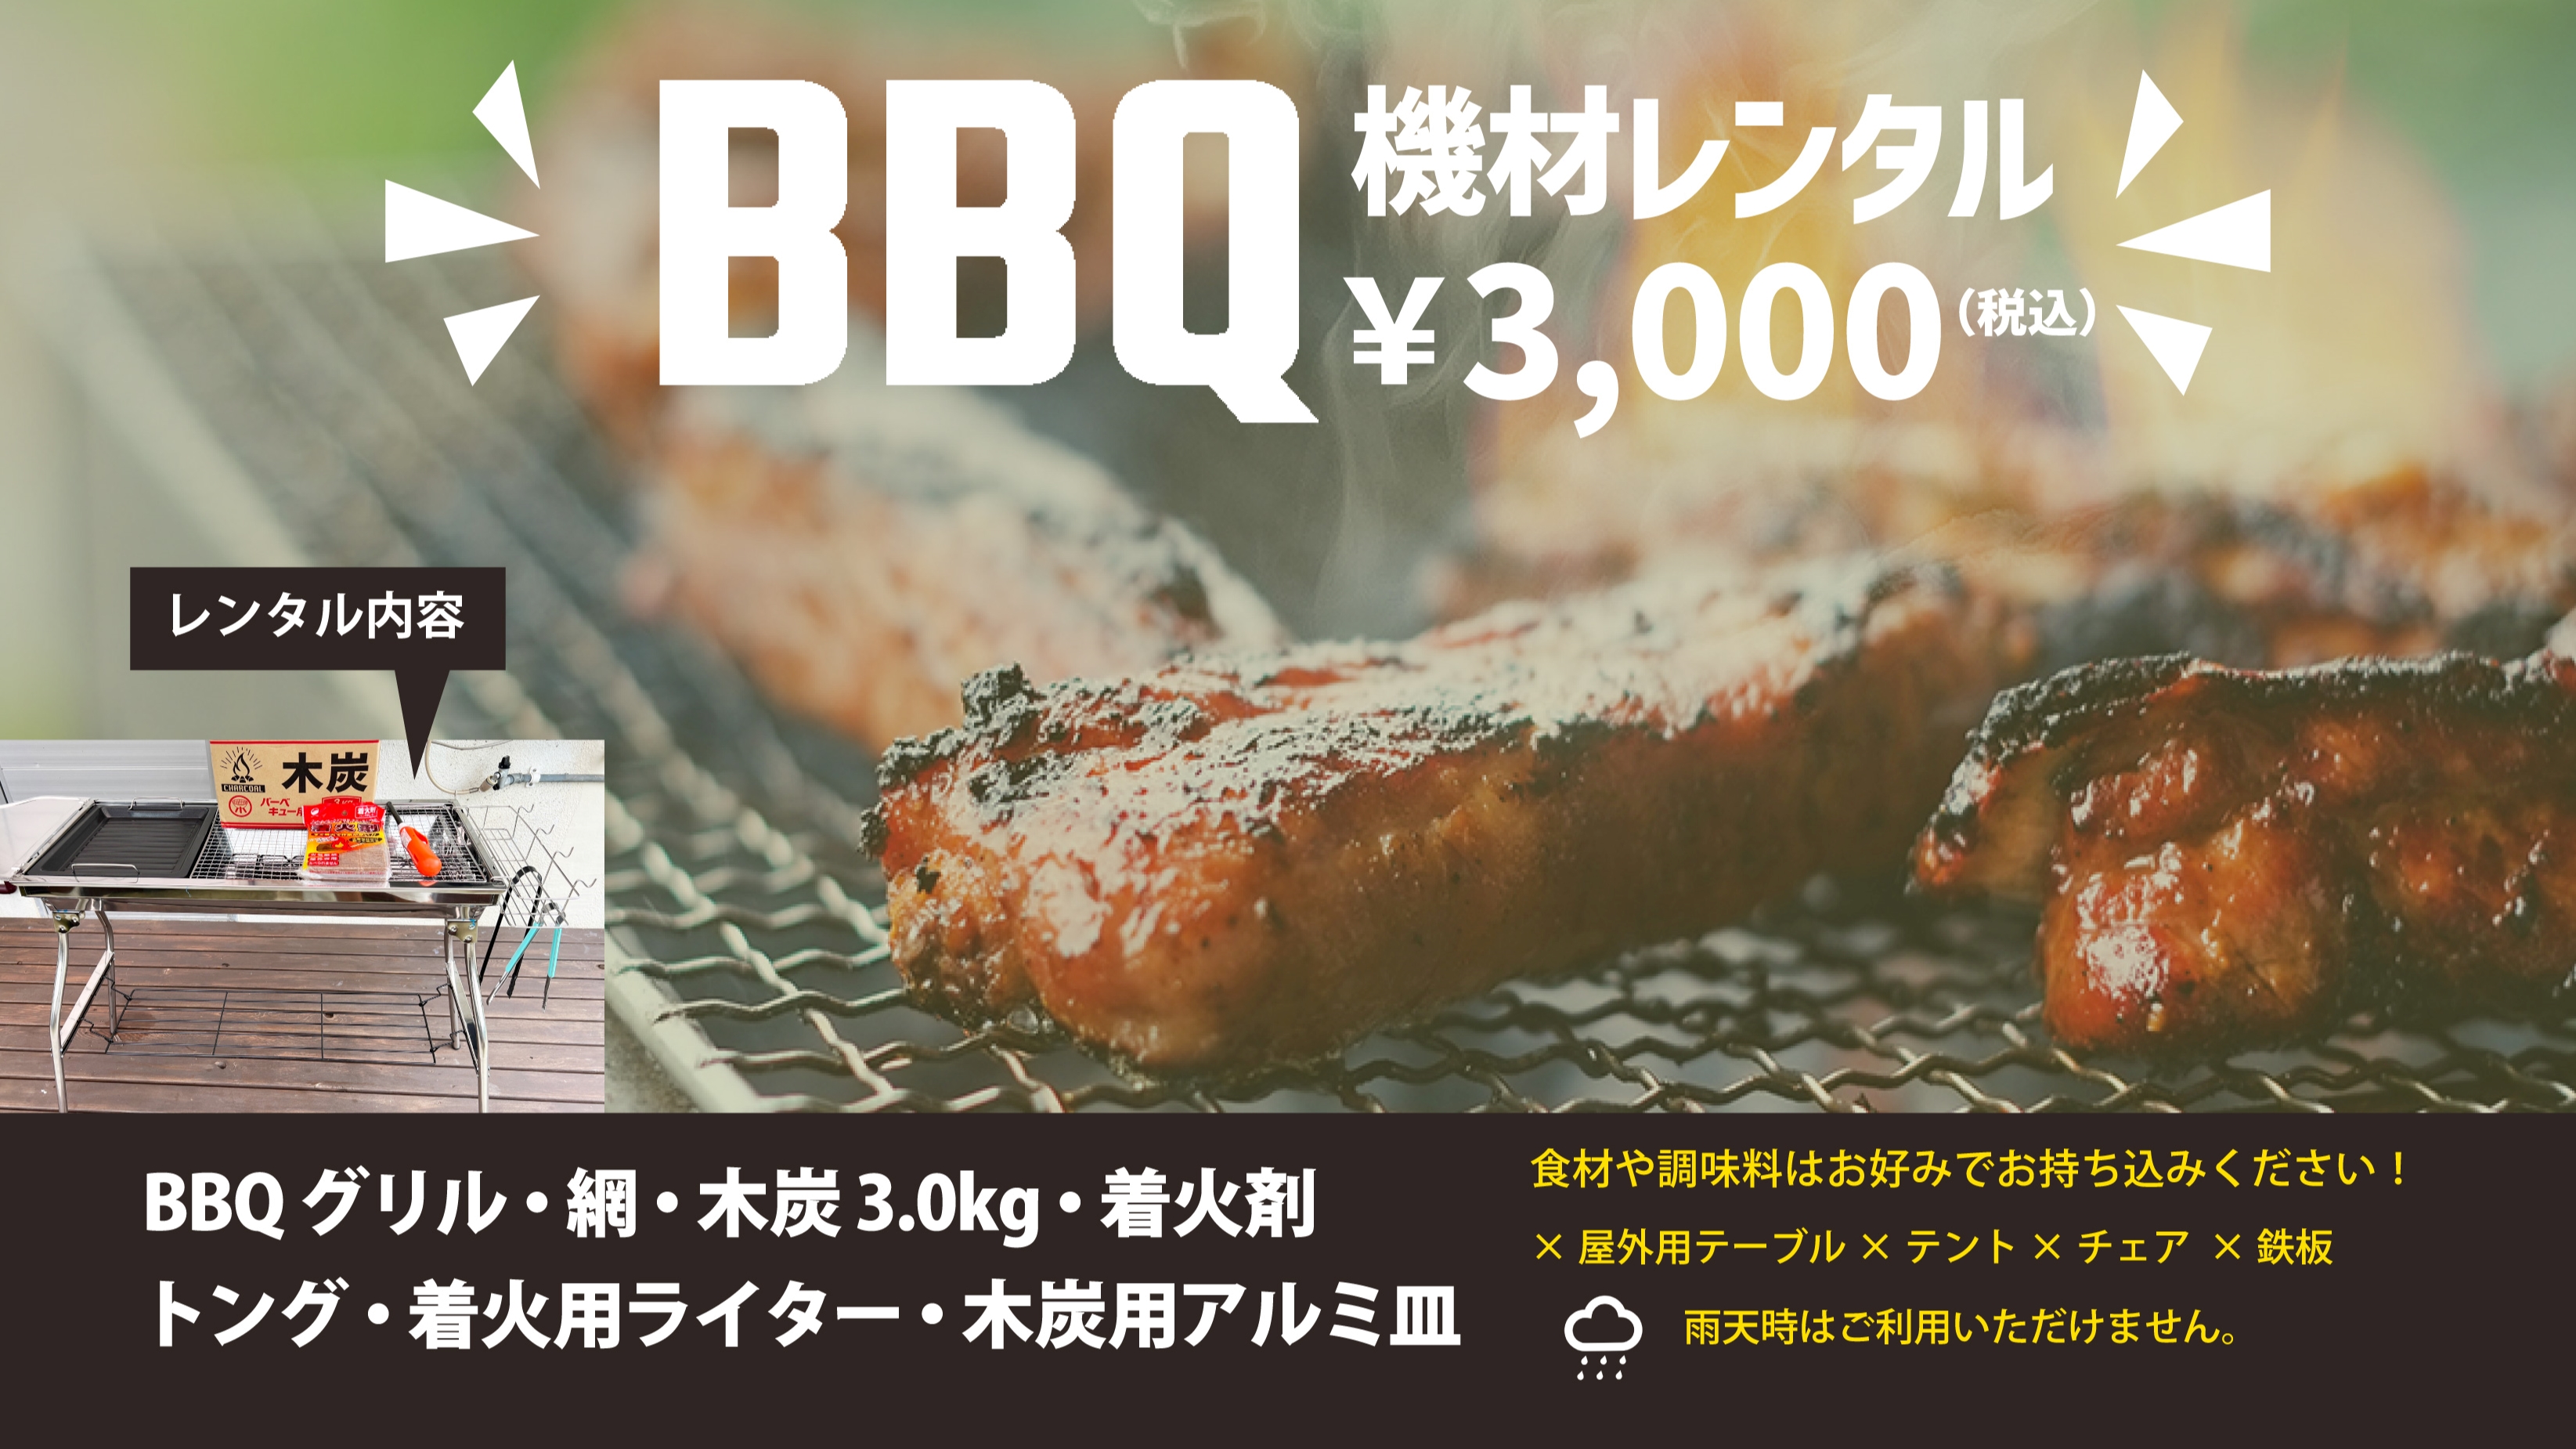 BBQレンタル受付中食材や調味料はお好みでお持ち込みください！器材レンタル3,000円